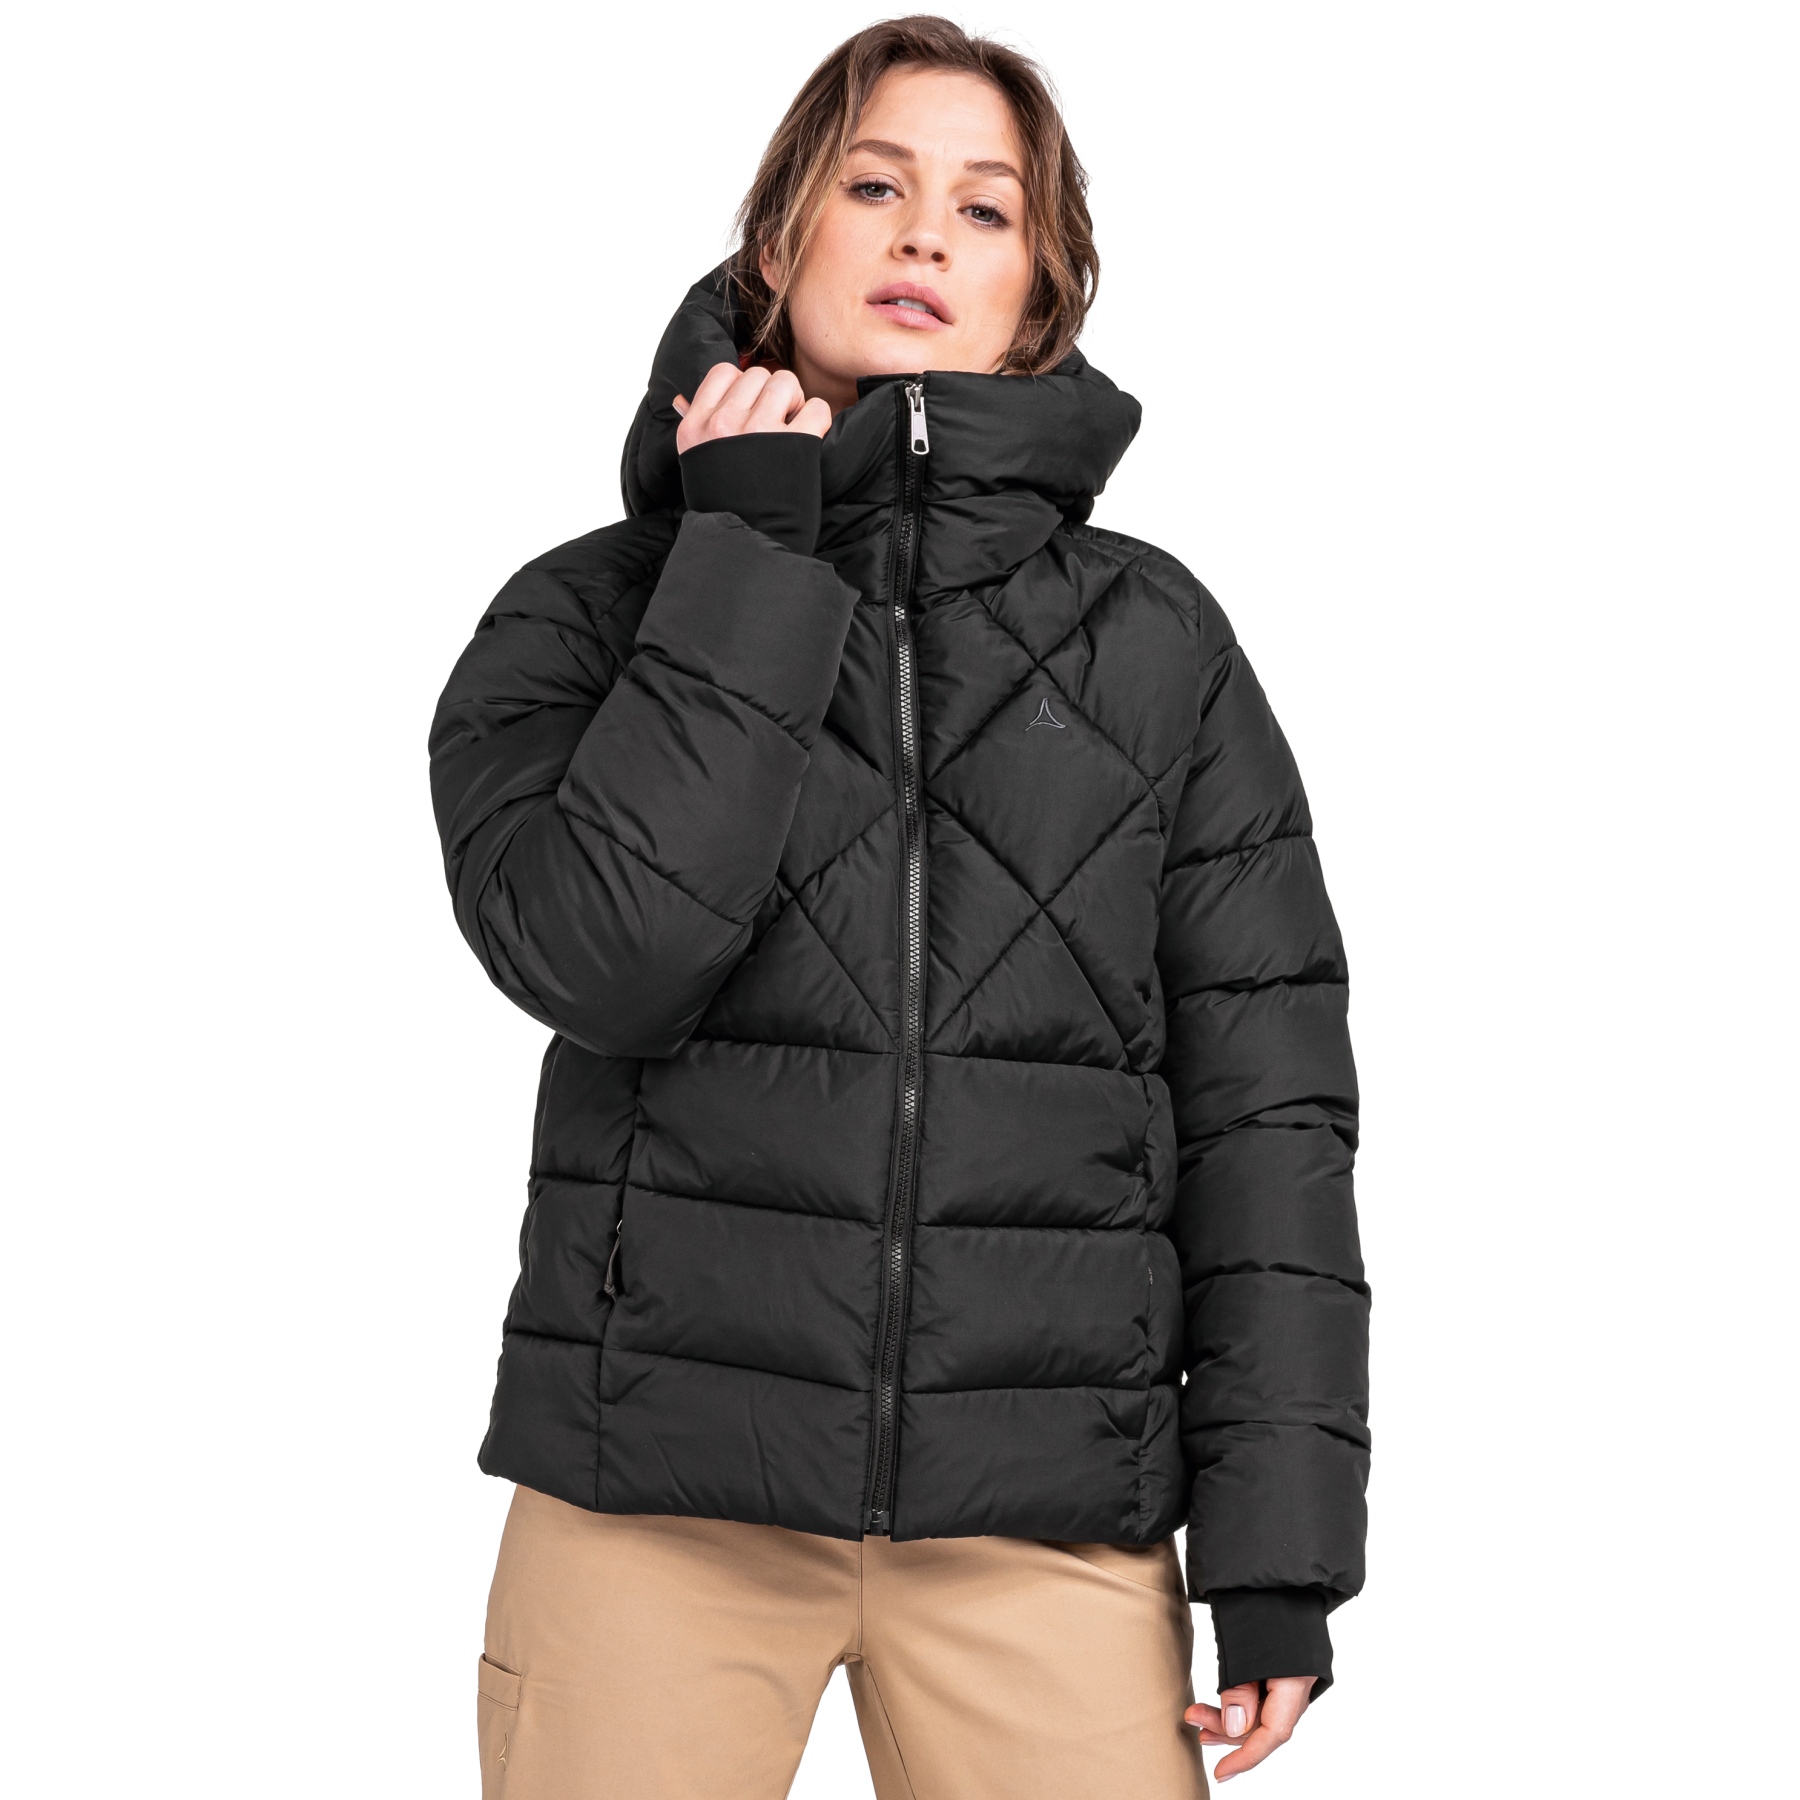 Produktbild von Schöffel Boston Isolierte Jacke Damen - schwarz 9990